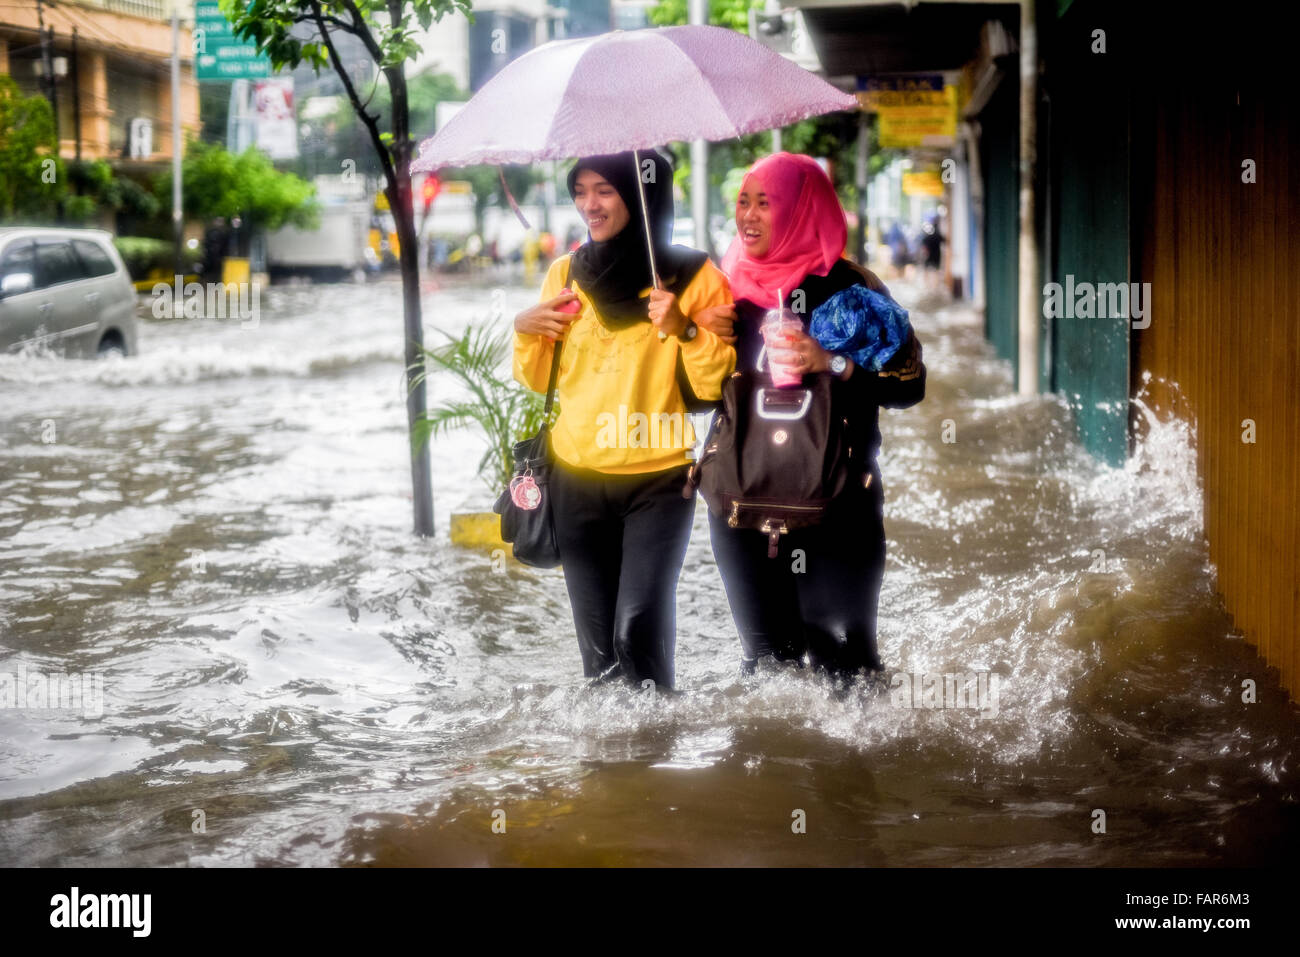 Des femmes marchant sur une passerelle inondée à Jakarta, après une pluie continue ont quitté le centre-ville de la capitale indonésienne inondé. Banque D'Images